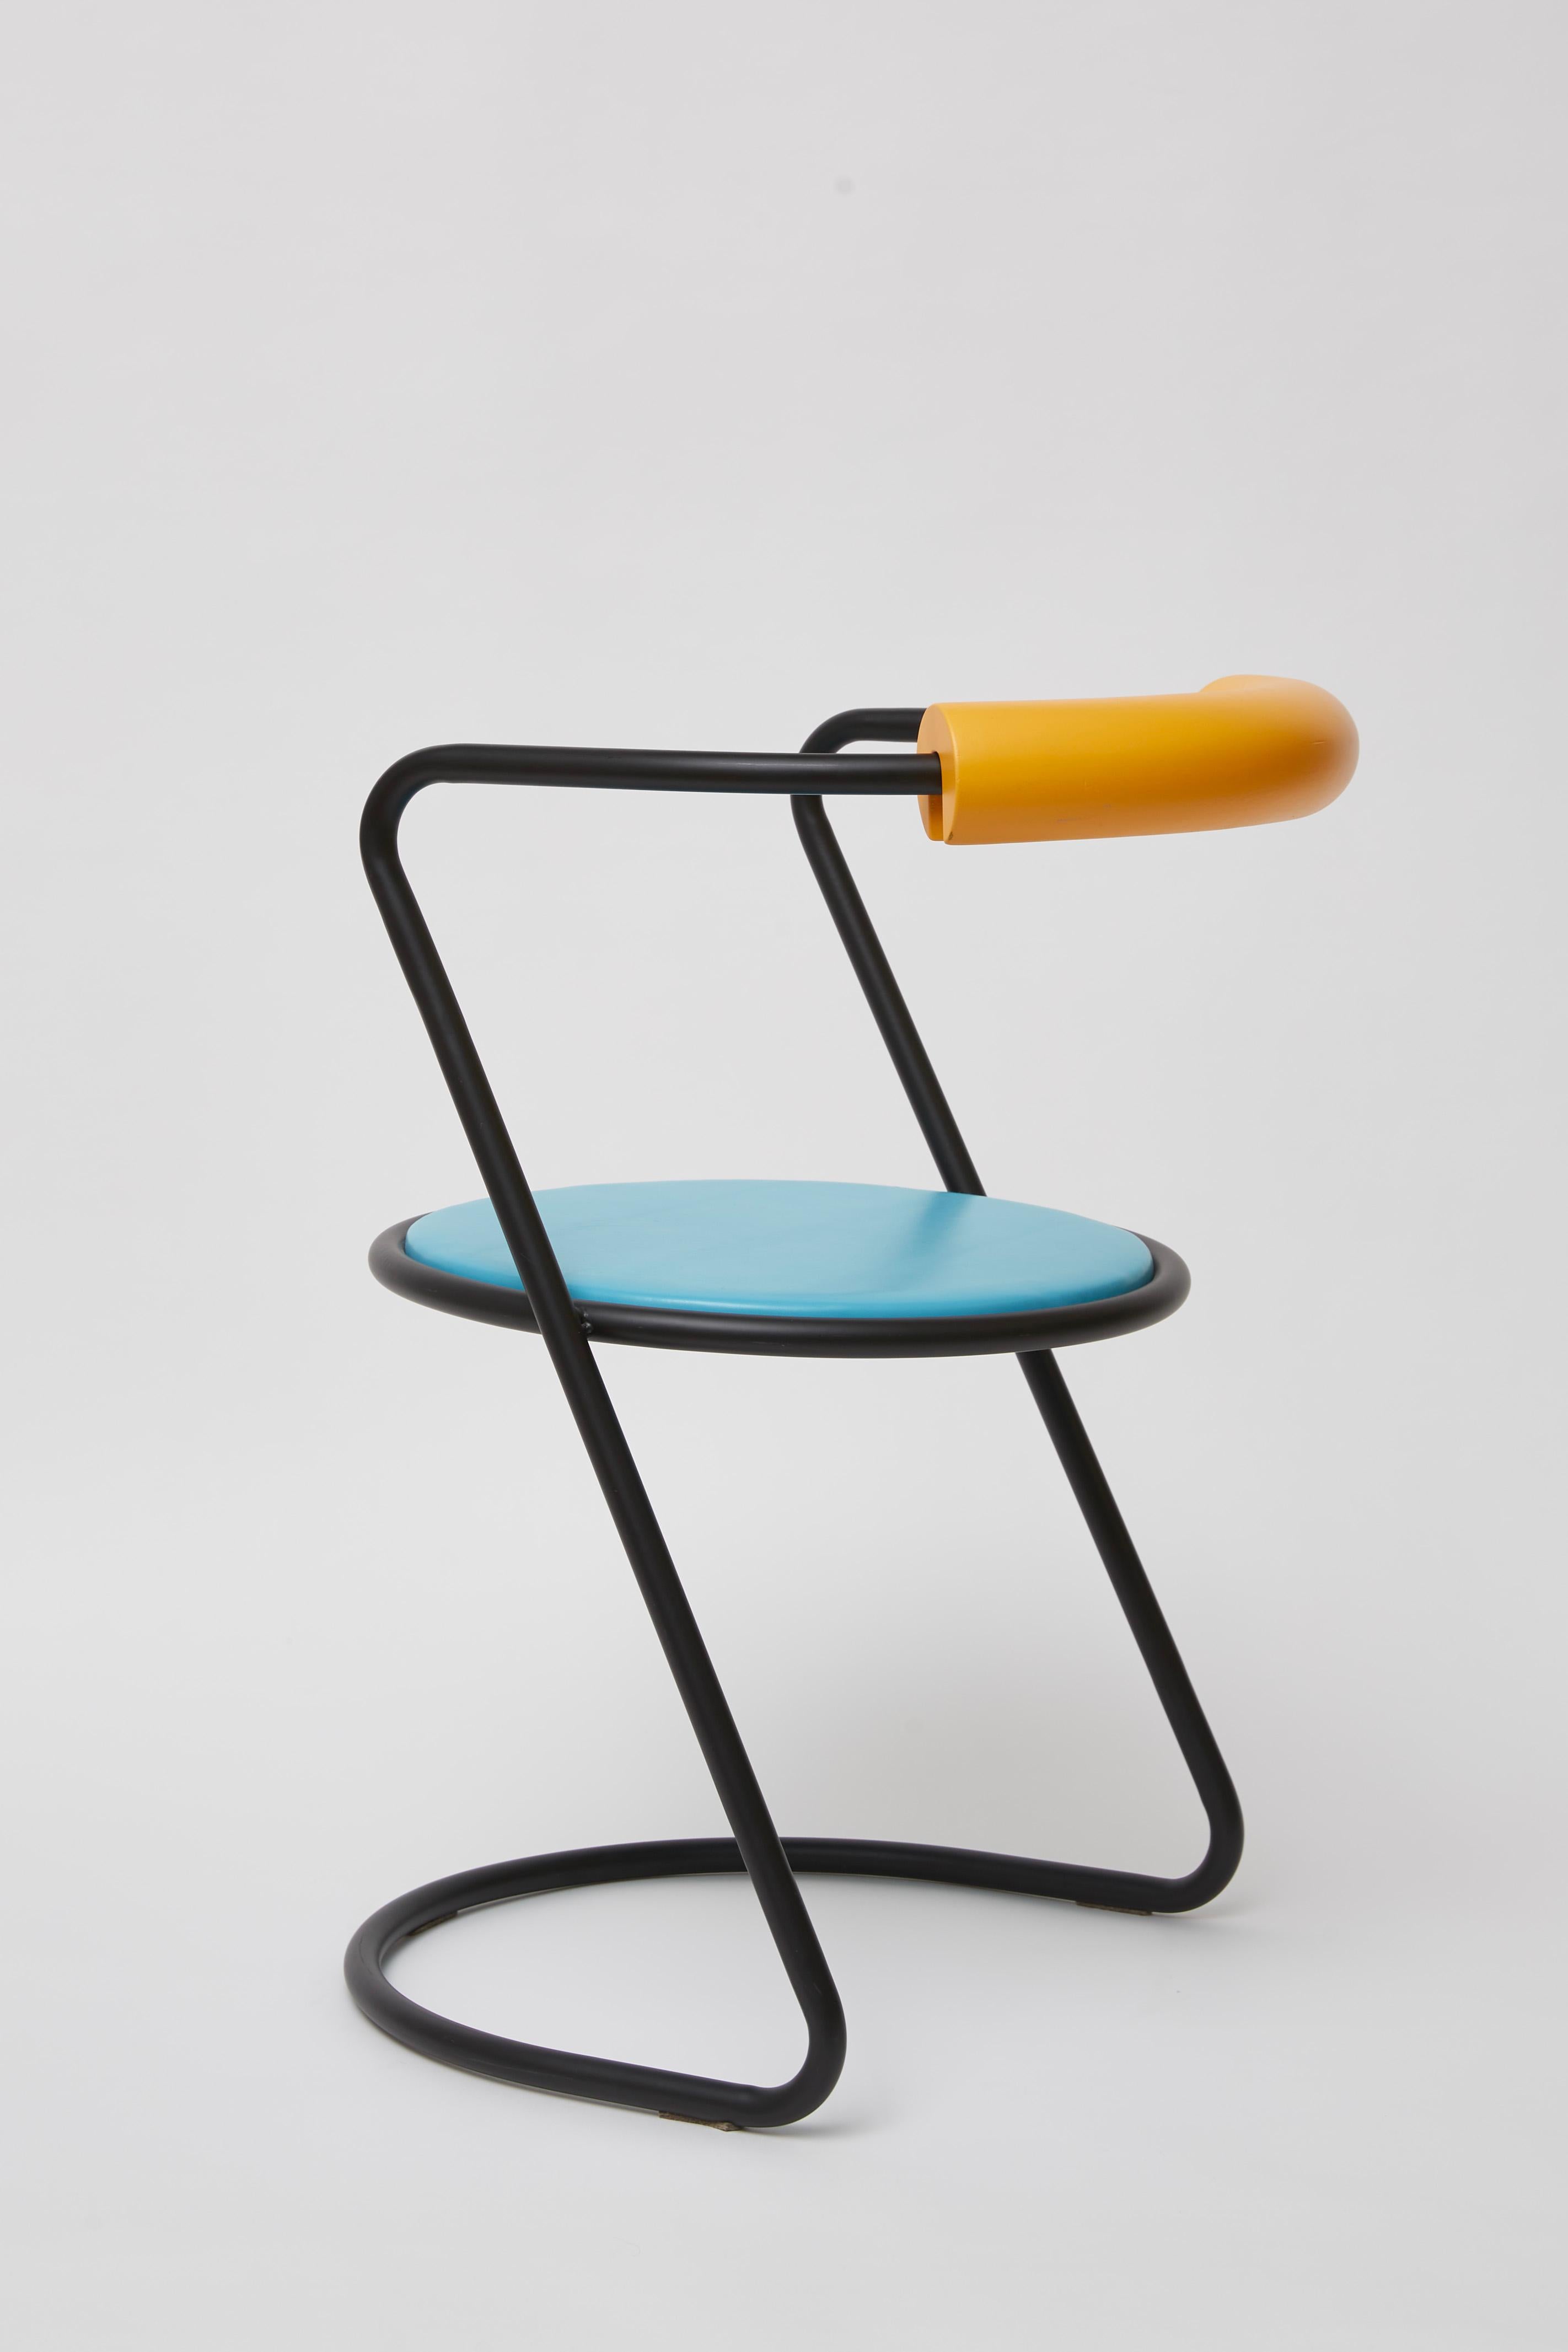 Powder-Coated Z-Disk Chair, Black, Orange & Light Blue For Sale